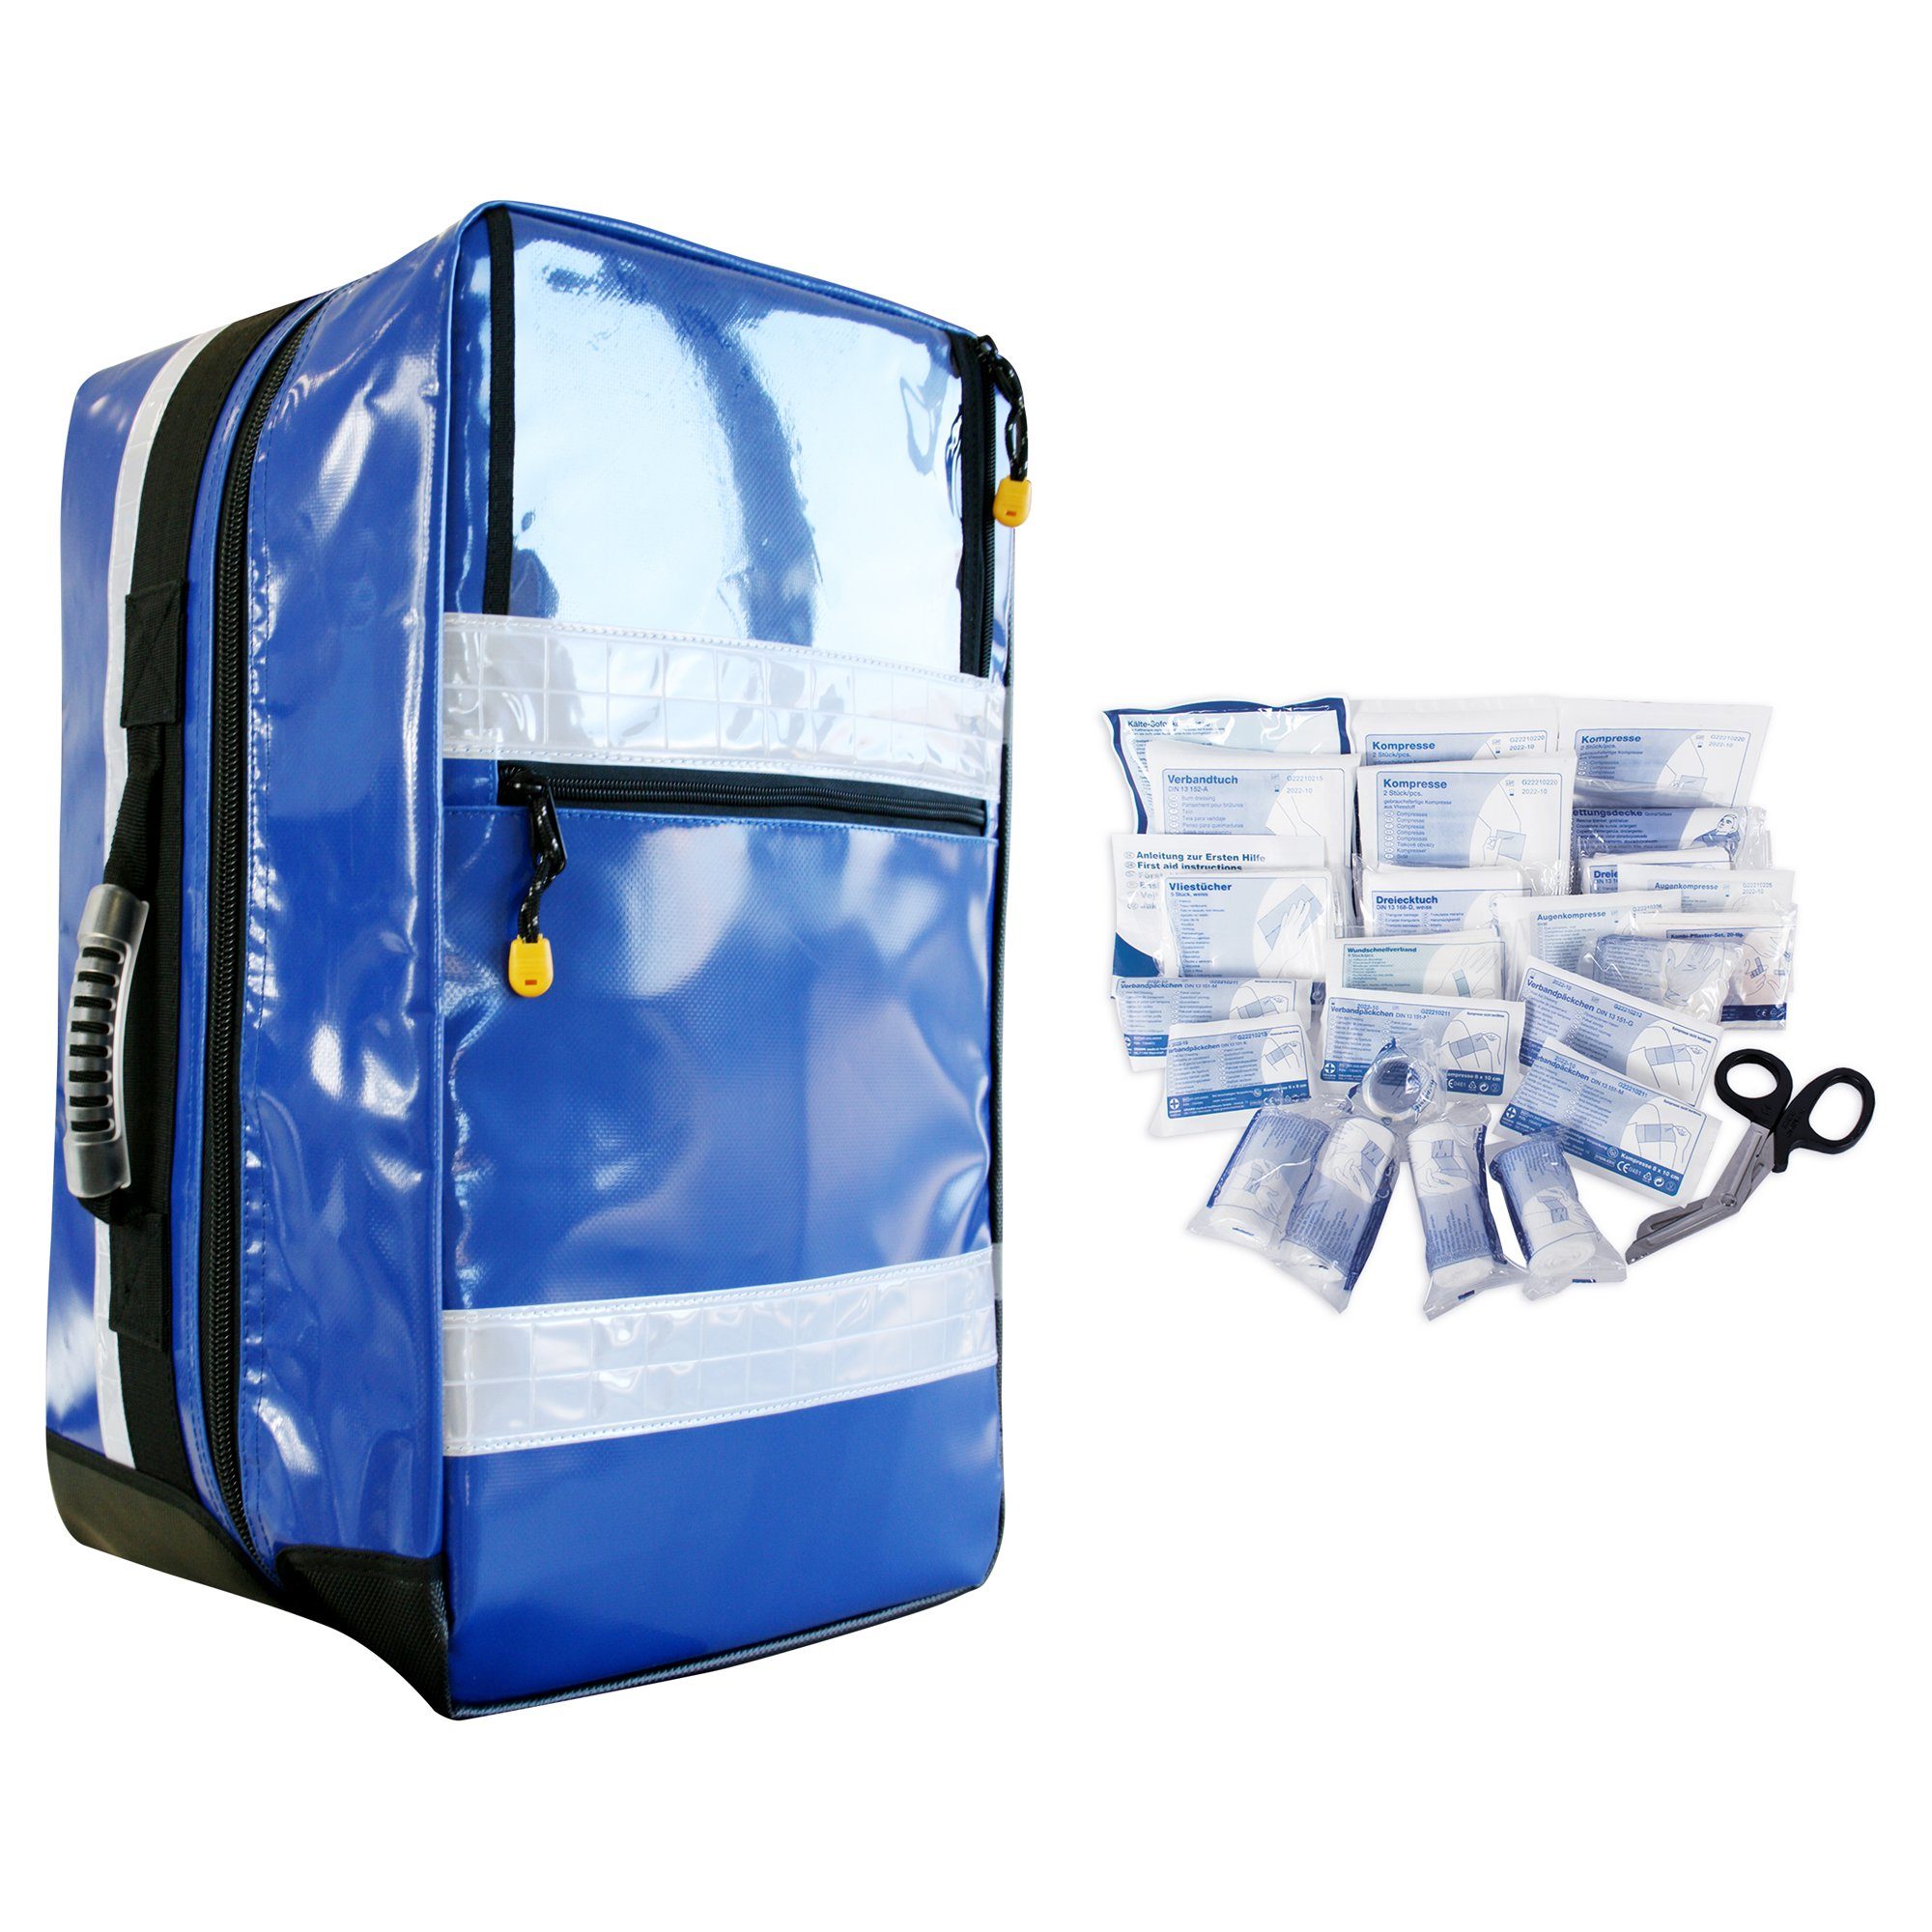 Jetzt supergünstig per Versand bestellen SANISMART Arzttasche Notfallrucksack MEDICUS 13157 blau L DIN mit Plane gefüllt